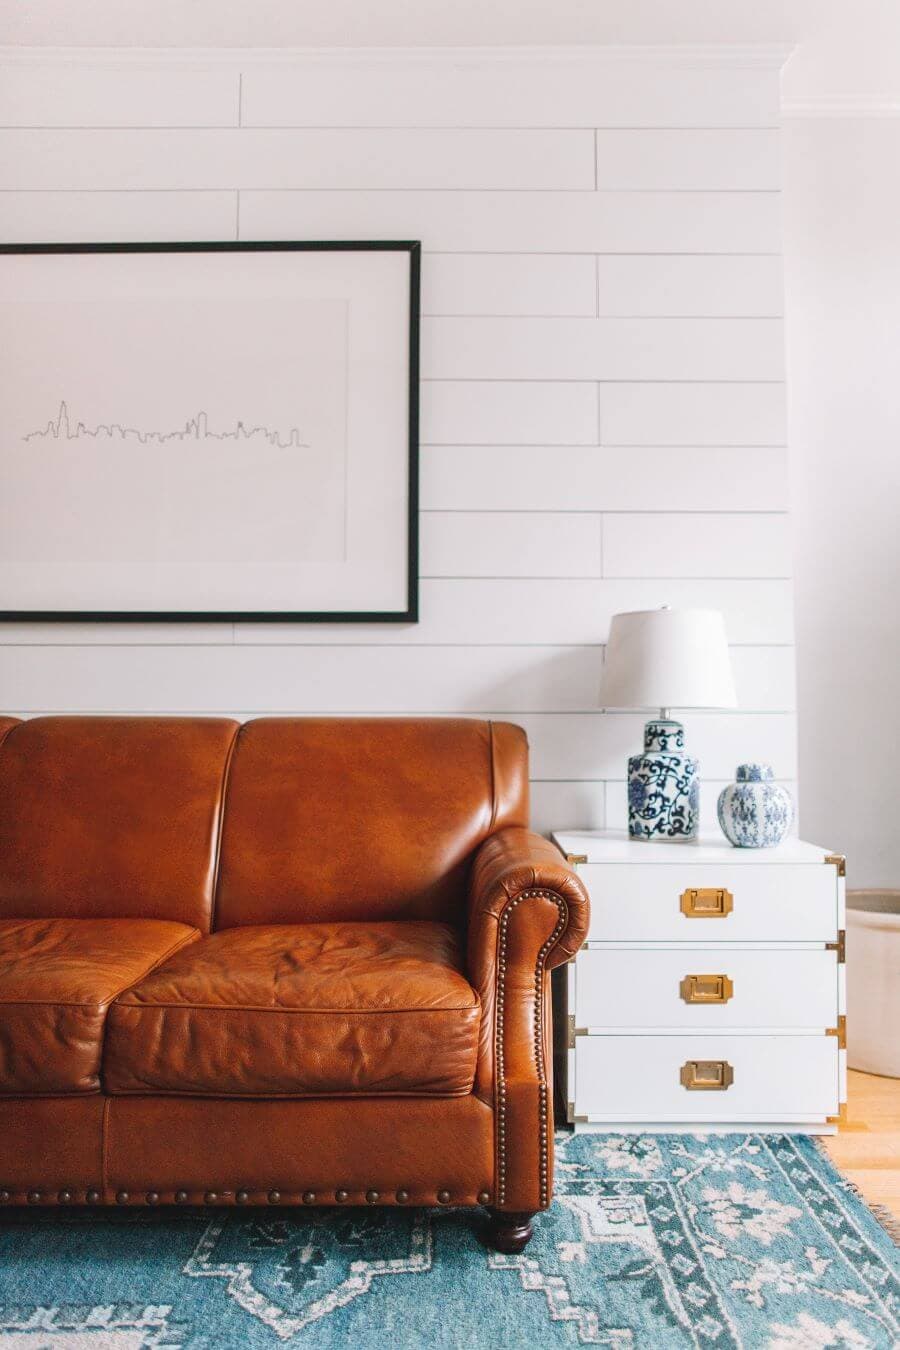 Living estilo nórdico minimalista, con muro de madera blanca. Sillón de cuero café, junto a él una mesa blanca con tres cajones con tiradores dorados. Sobre el sillón, en la pared hay un cuadro de un skyline hecho con una línea. Lámpara de mesa de cerámica